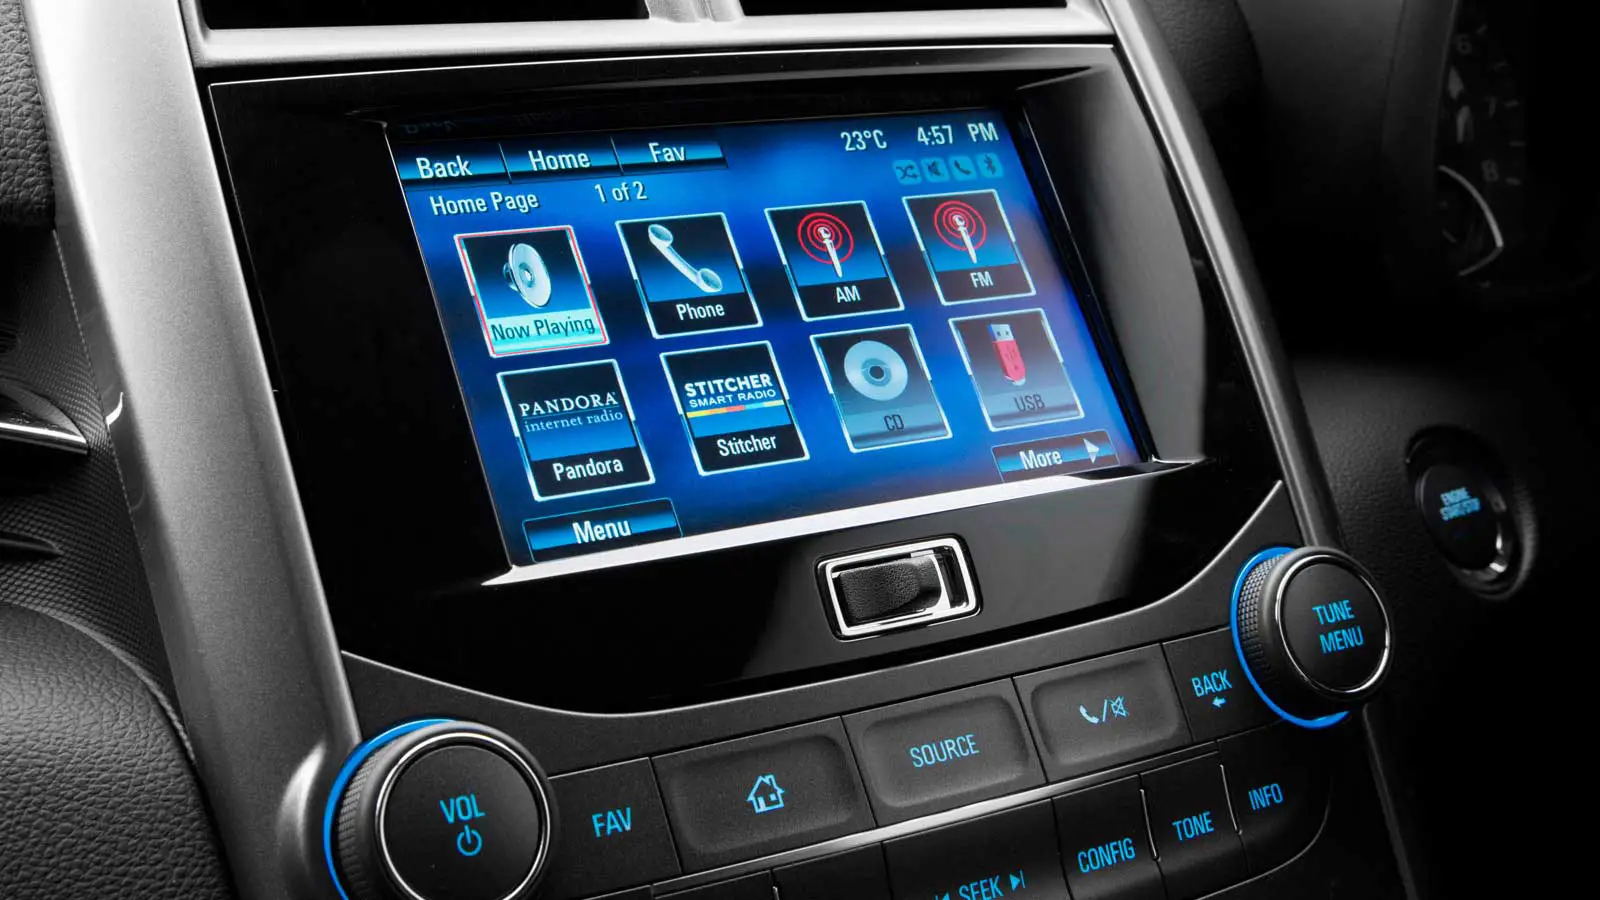 Holden Malibu CDX 2.4L Interior multimedia